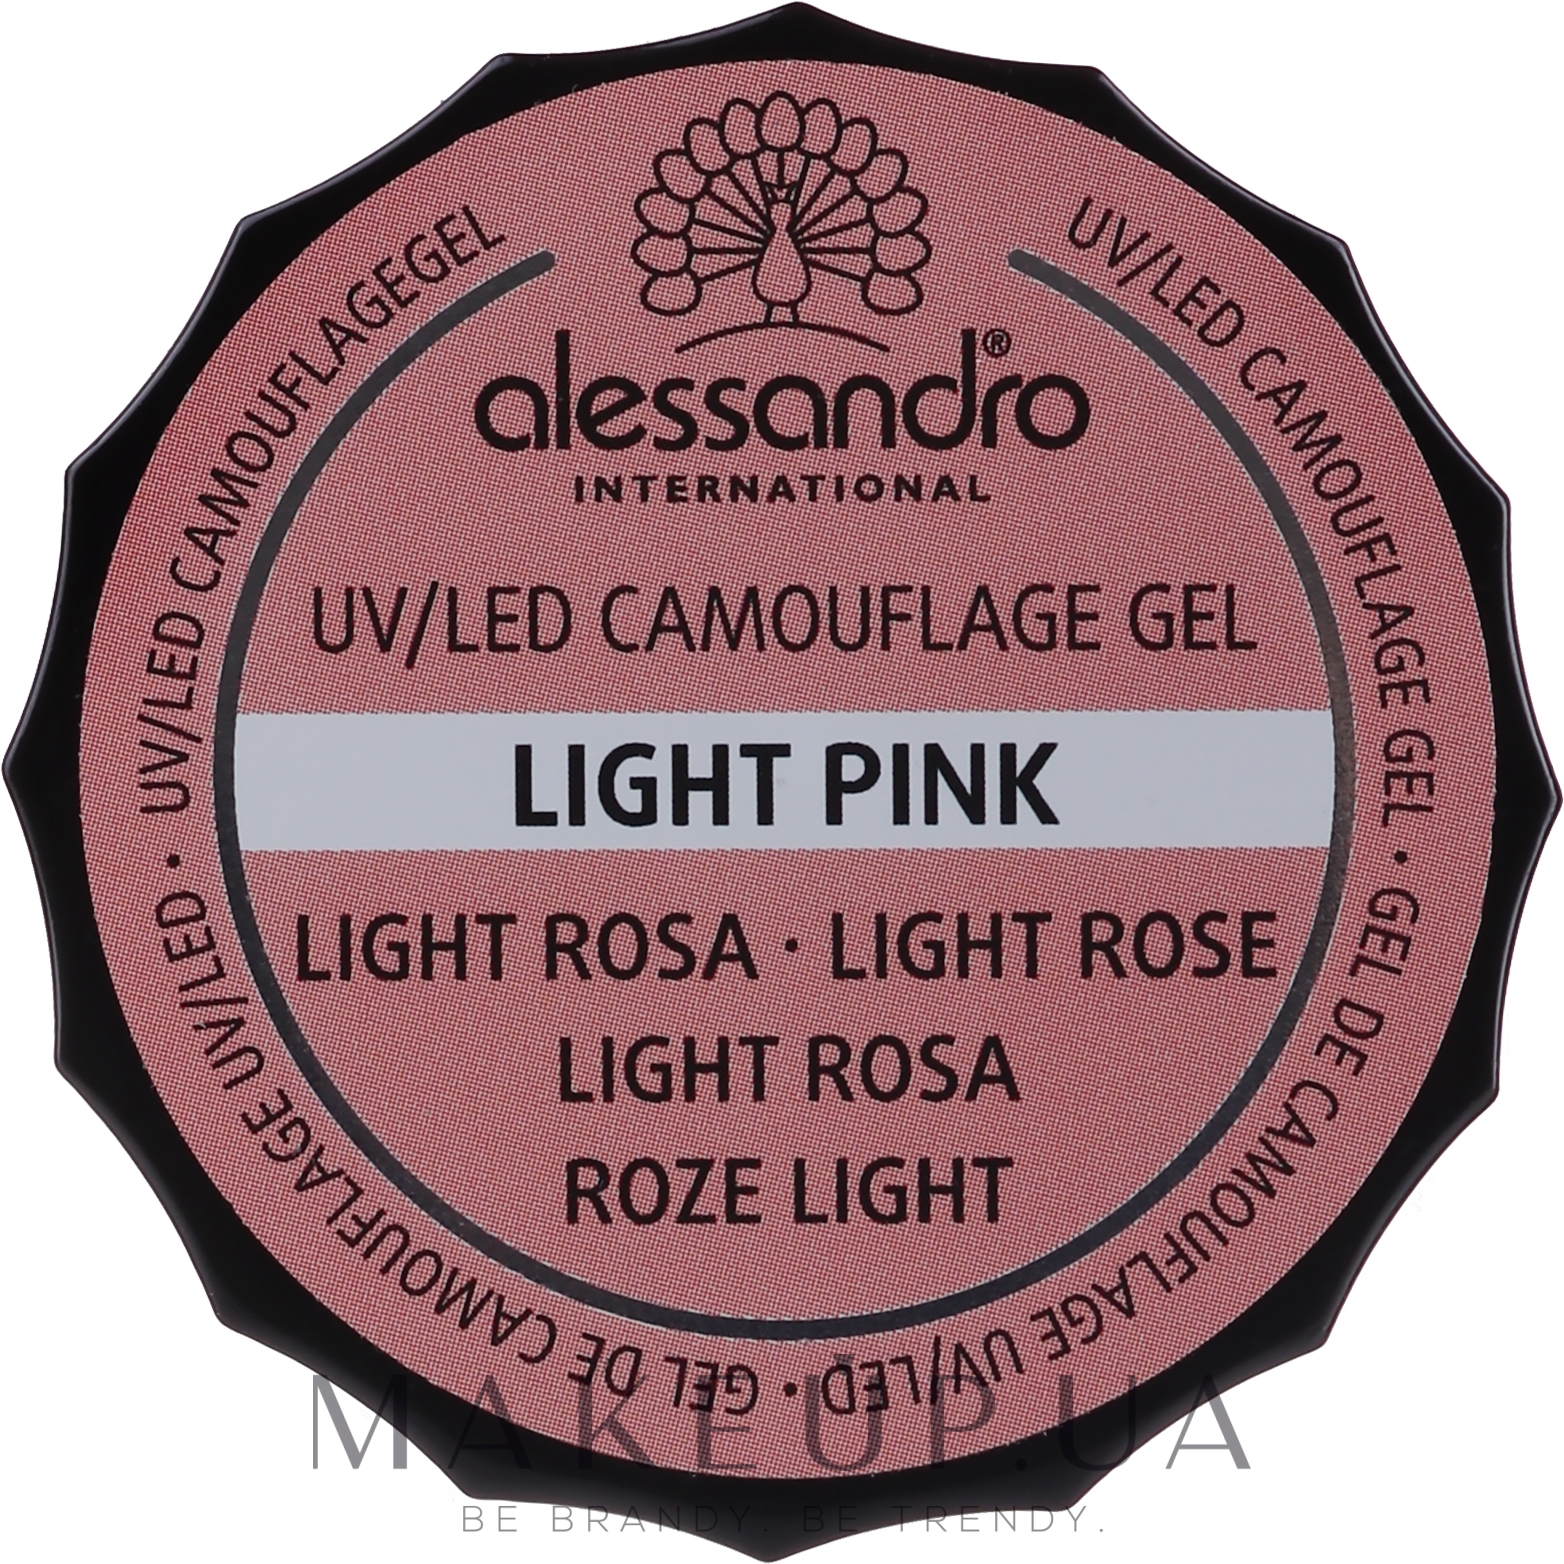 Камуфляжный гель для ногтей - Alessandro International Camouflage Gel  — фото Light Pink